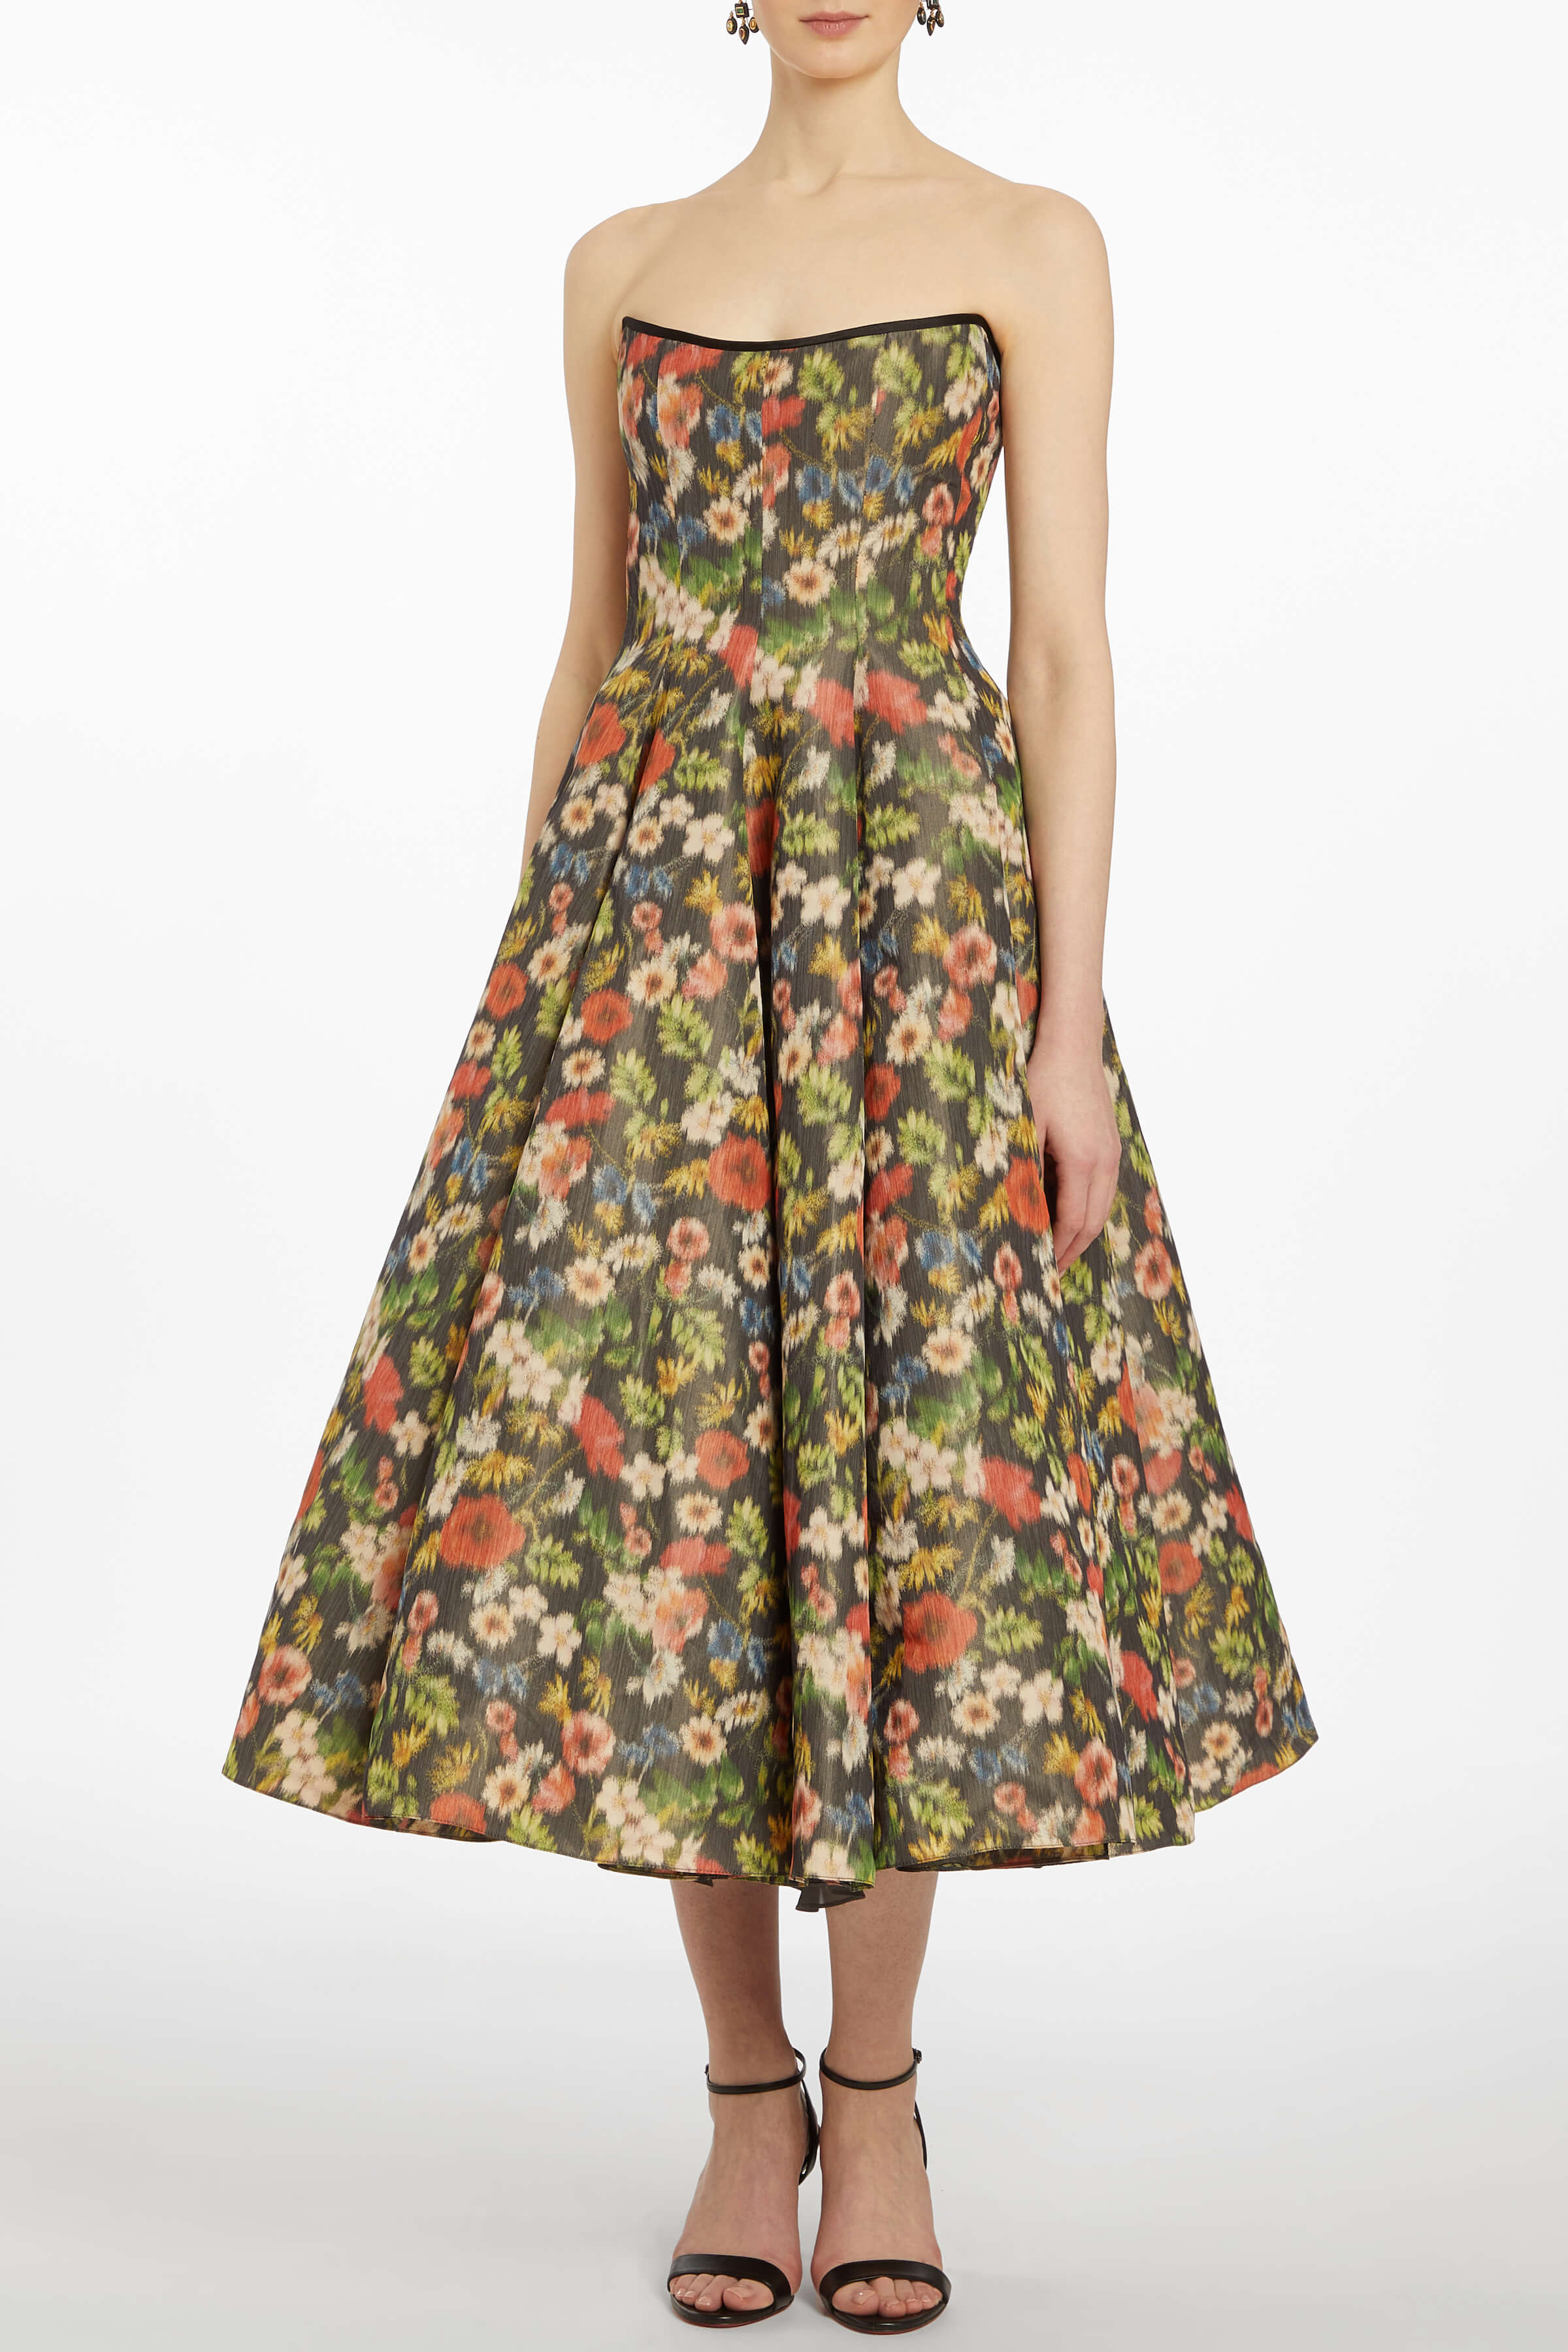 Rousseau Wildflower Ikat Dress